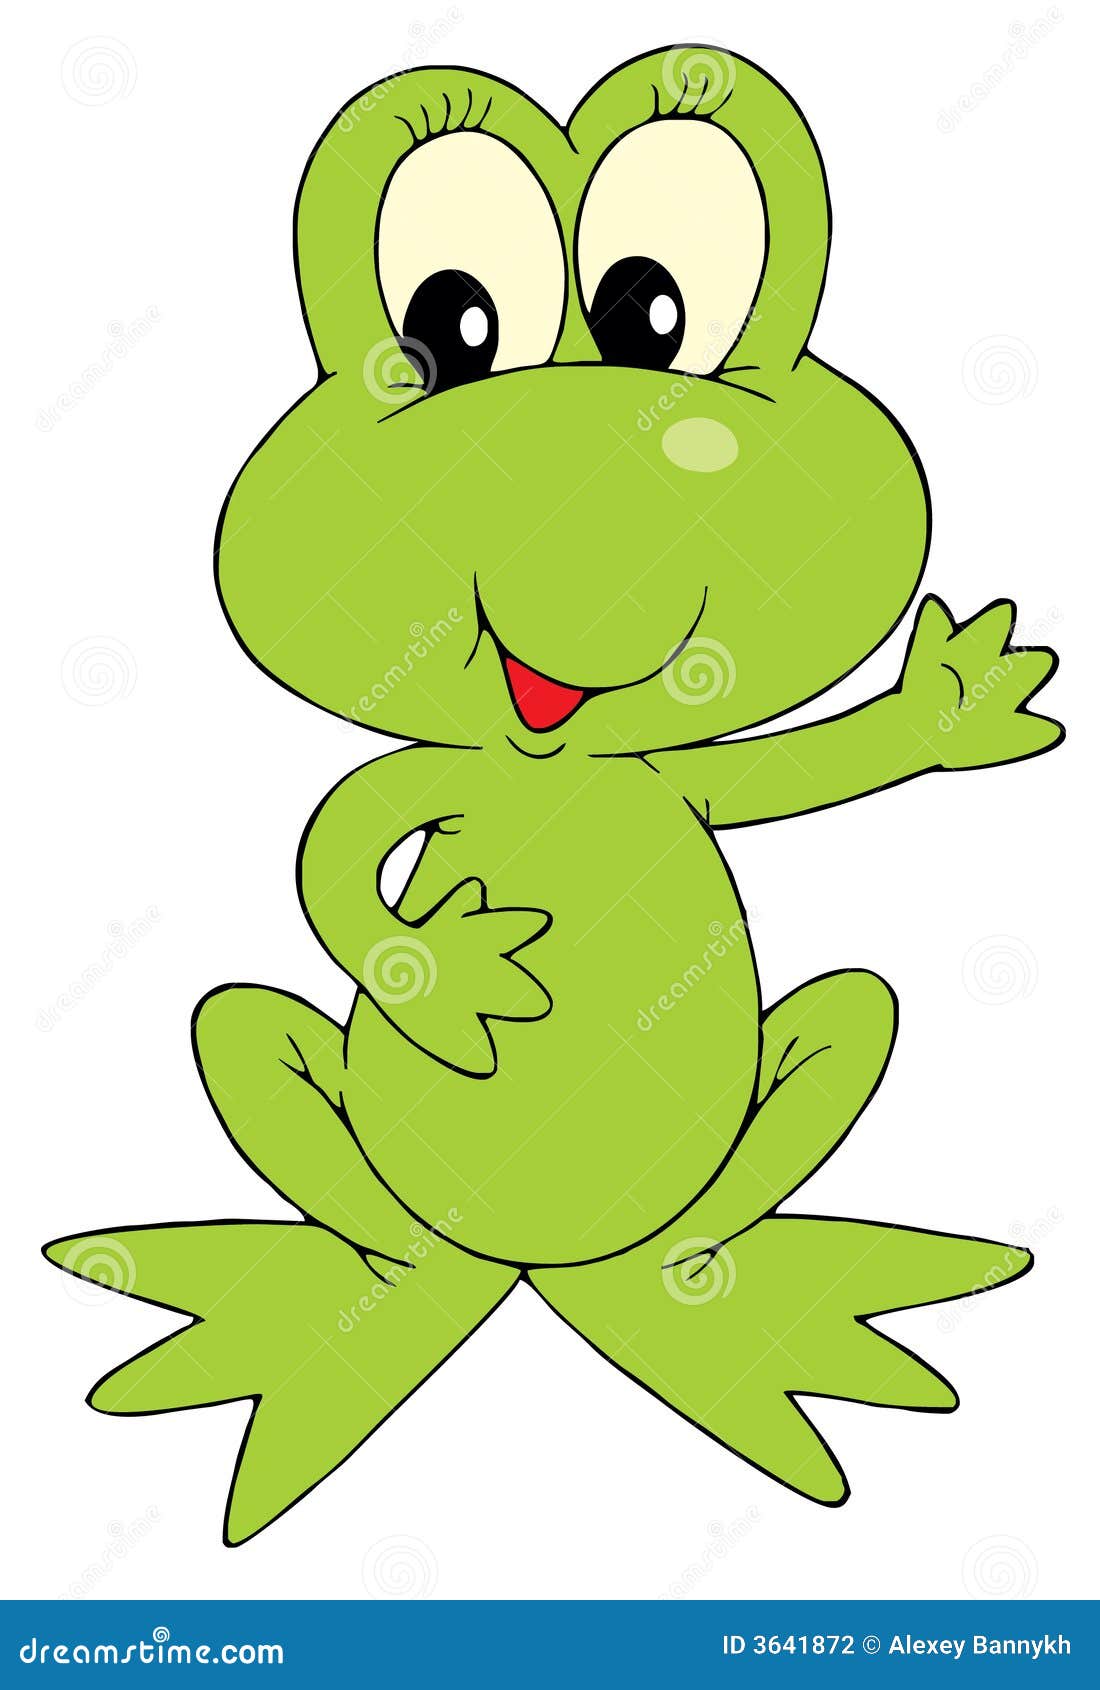 25214 Green Frog Stock Illustrations, Vectors & Clipart - Dreamstime